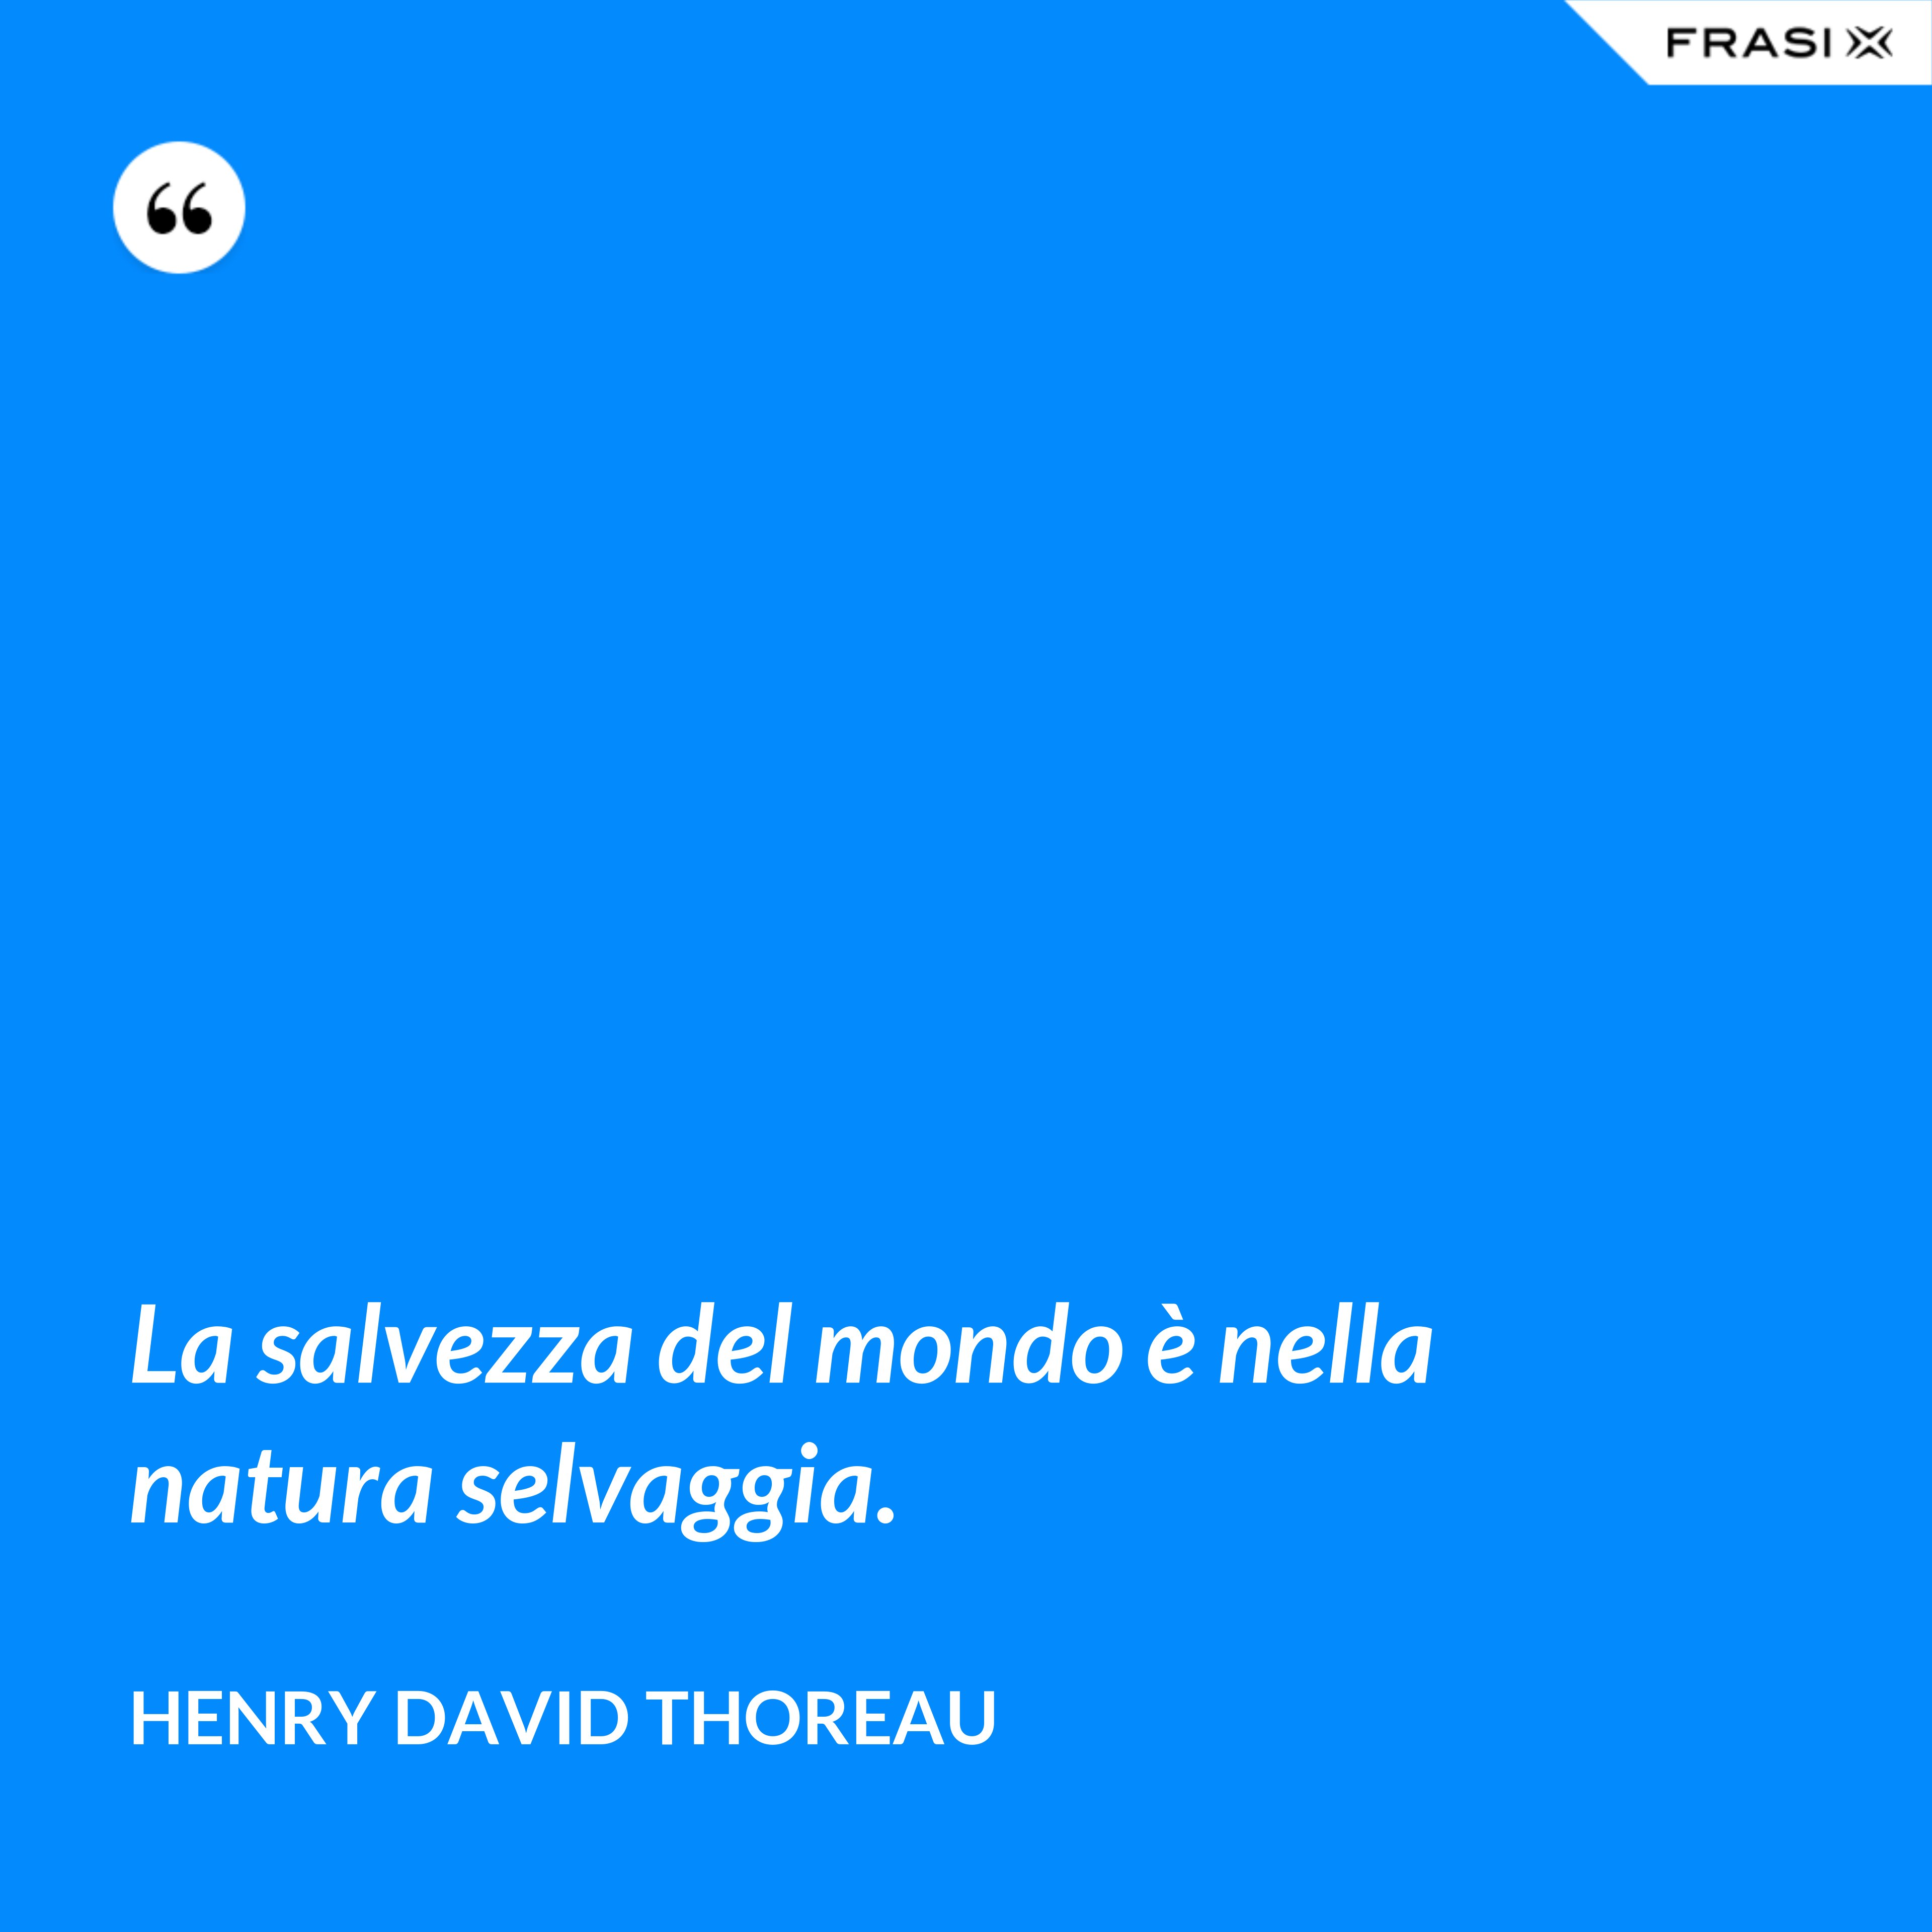 La salvezza del mondo è nella natura selvaggia. - Henry David Thoreau